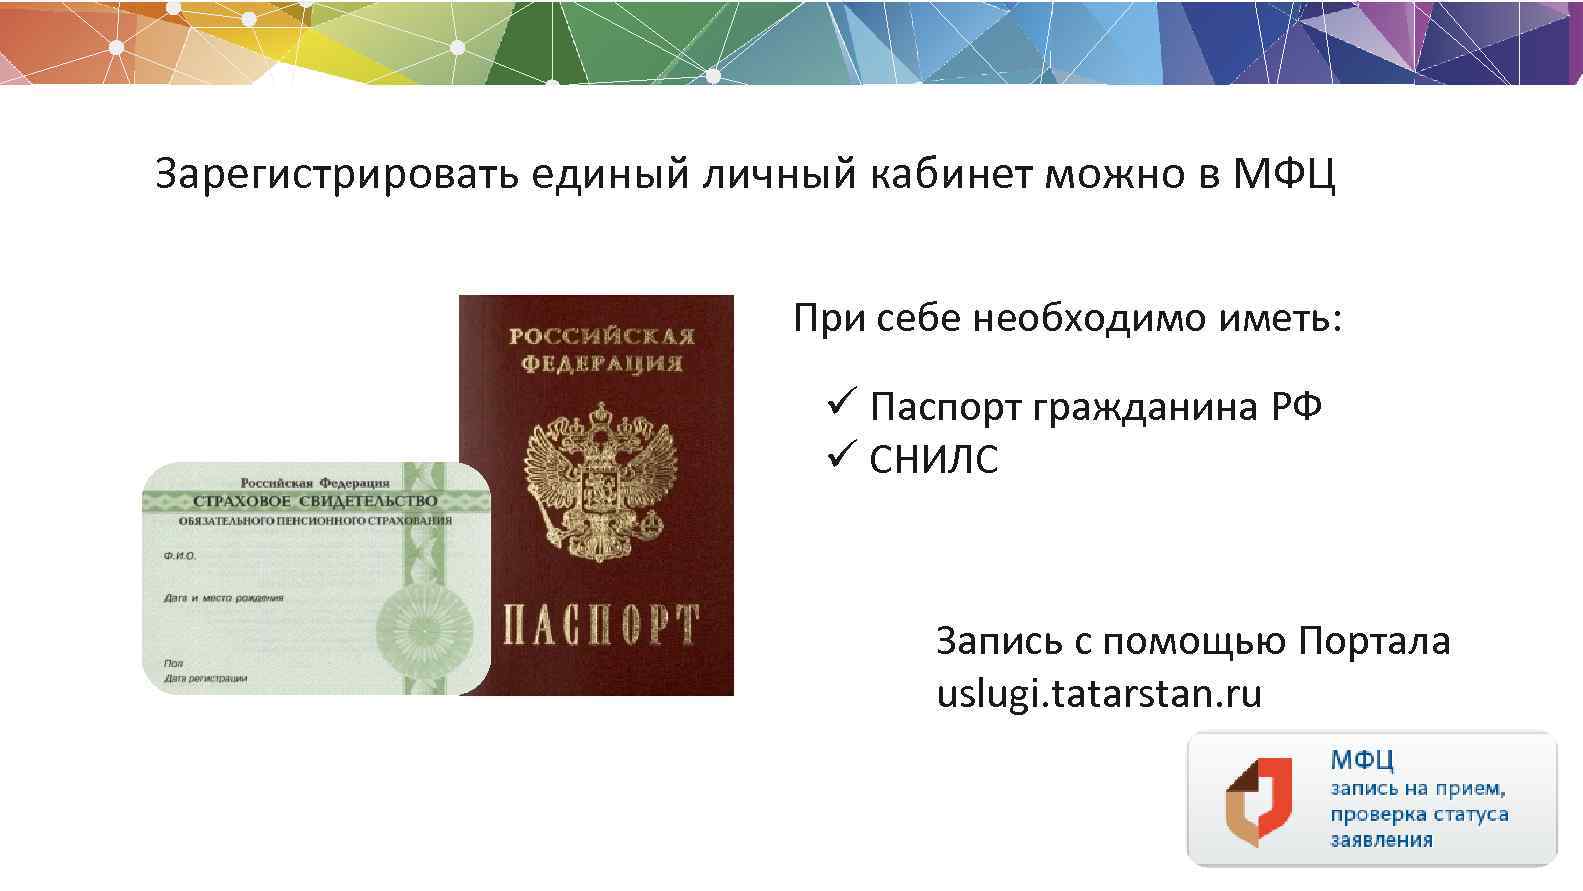 Фото на паспорт мфц делают ли